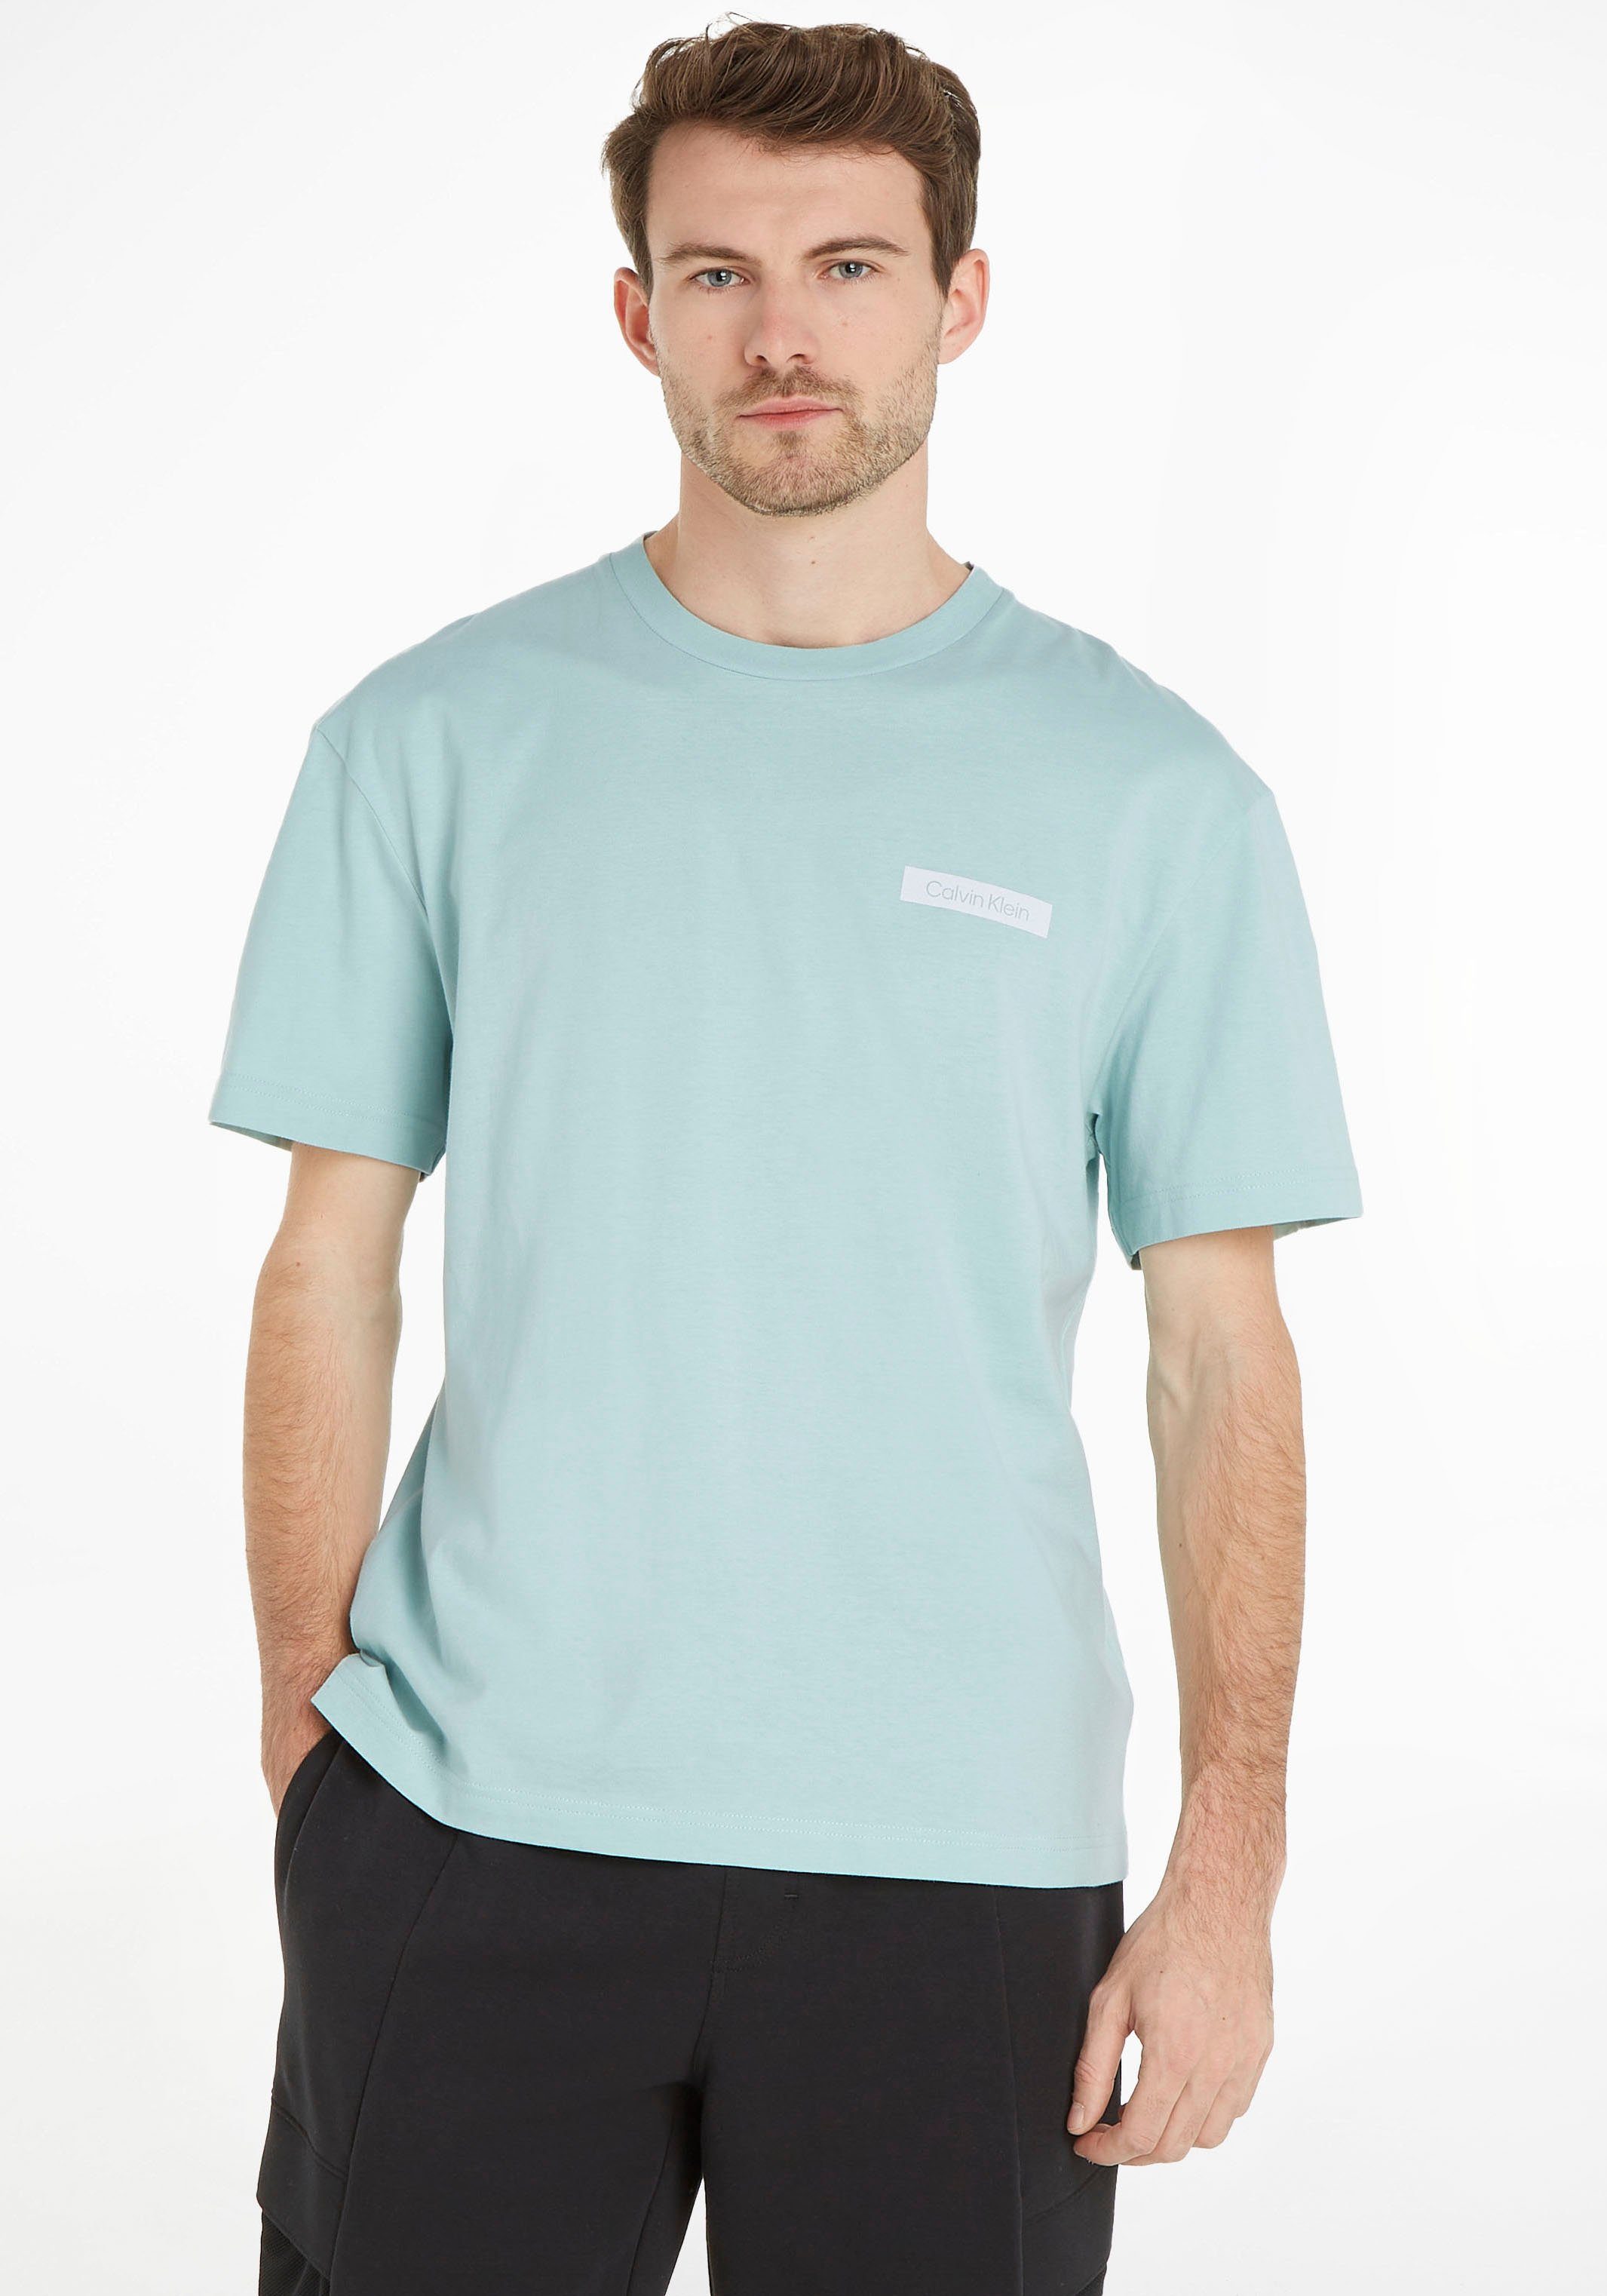 Klein Logodruck Calvin Klein und Calvin mit vorne hinten green ghost Kurzarmshirt